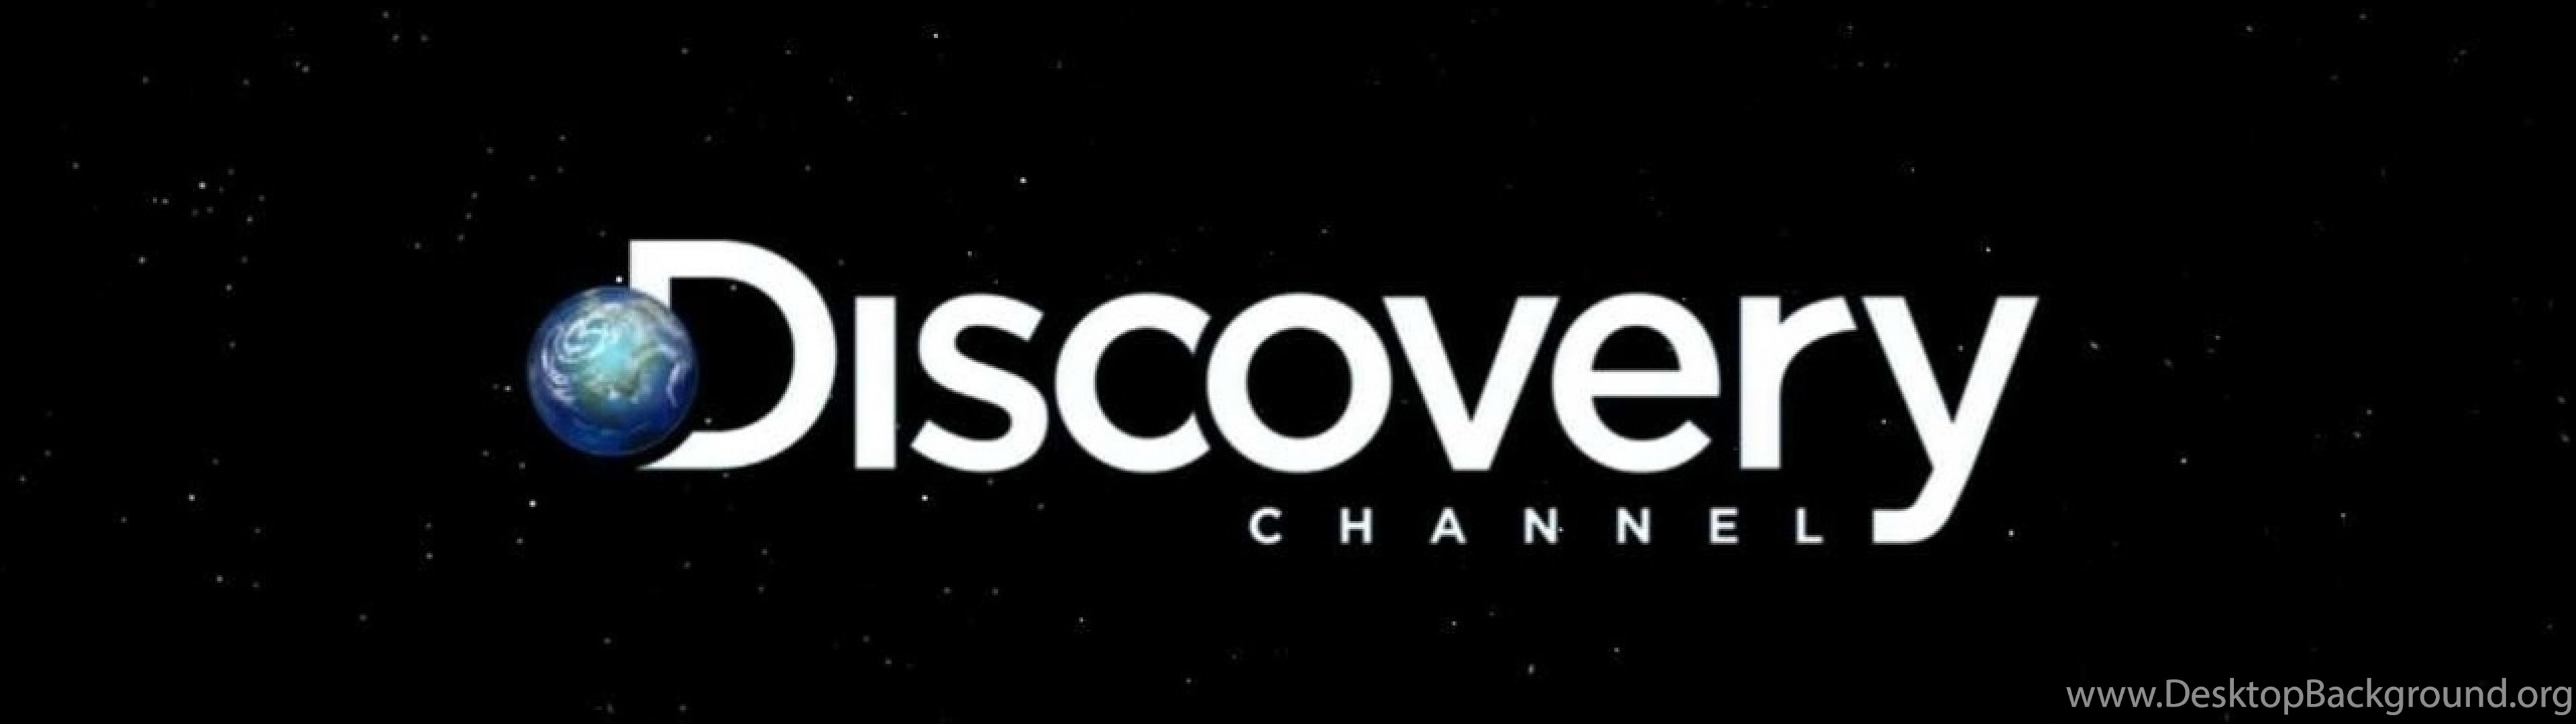 Покажи дискавери. Discovery channel логотип. Discovery канал. Discovery надпись. Discovery картинки.